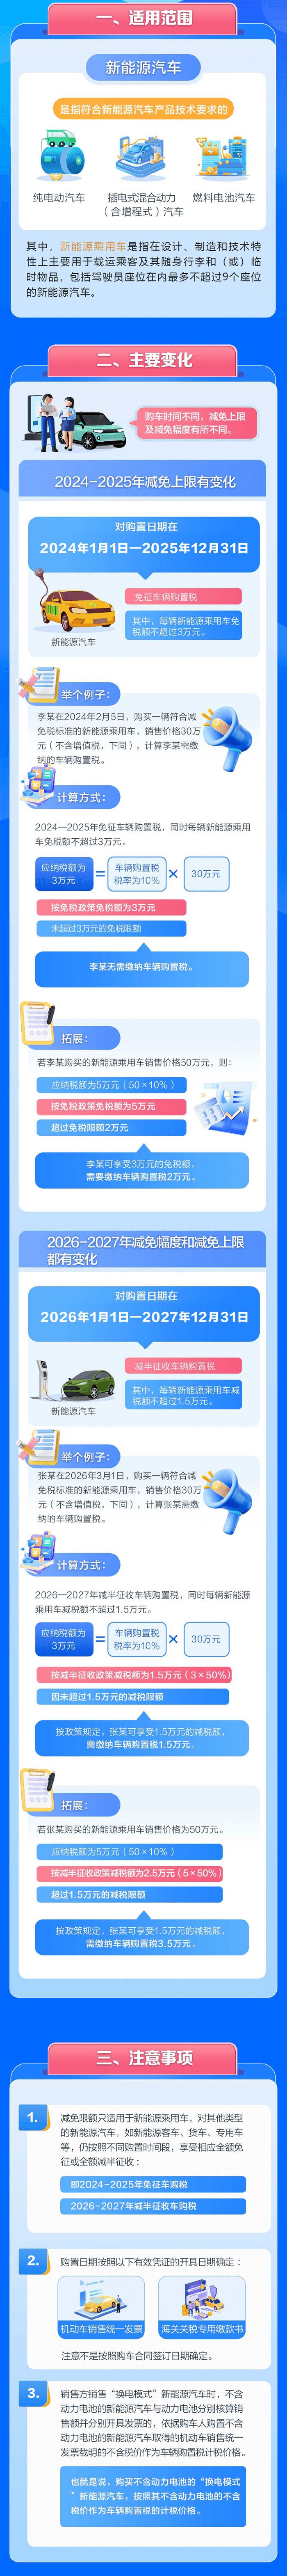 买小米SU7可减免车购税